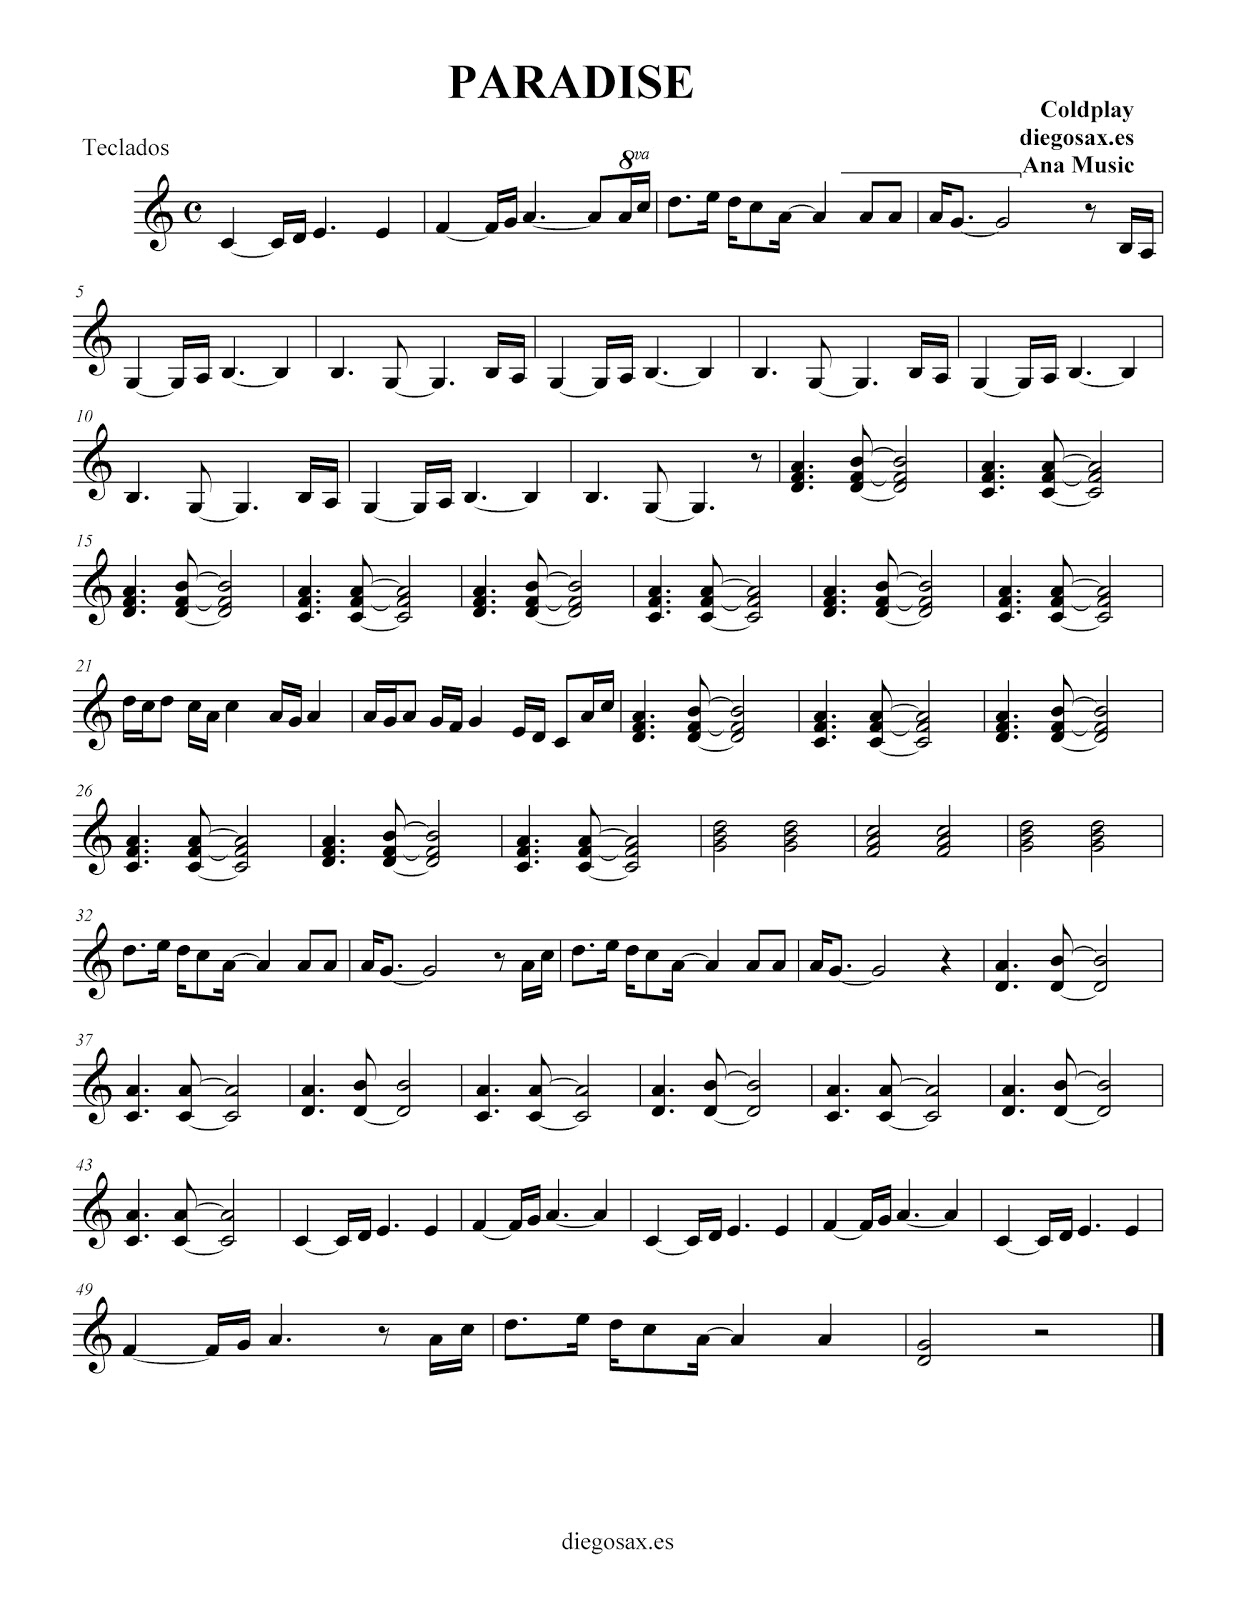 Contaminado Lograr revisión diegosax: Paradise, de Coldplay - Partitura para flauta, clarinete,  saxofón, violín, trompeta, acompañamiento...